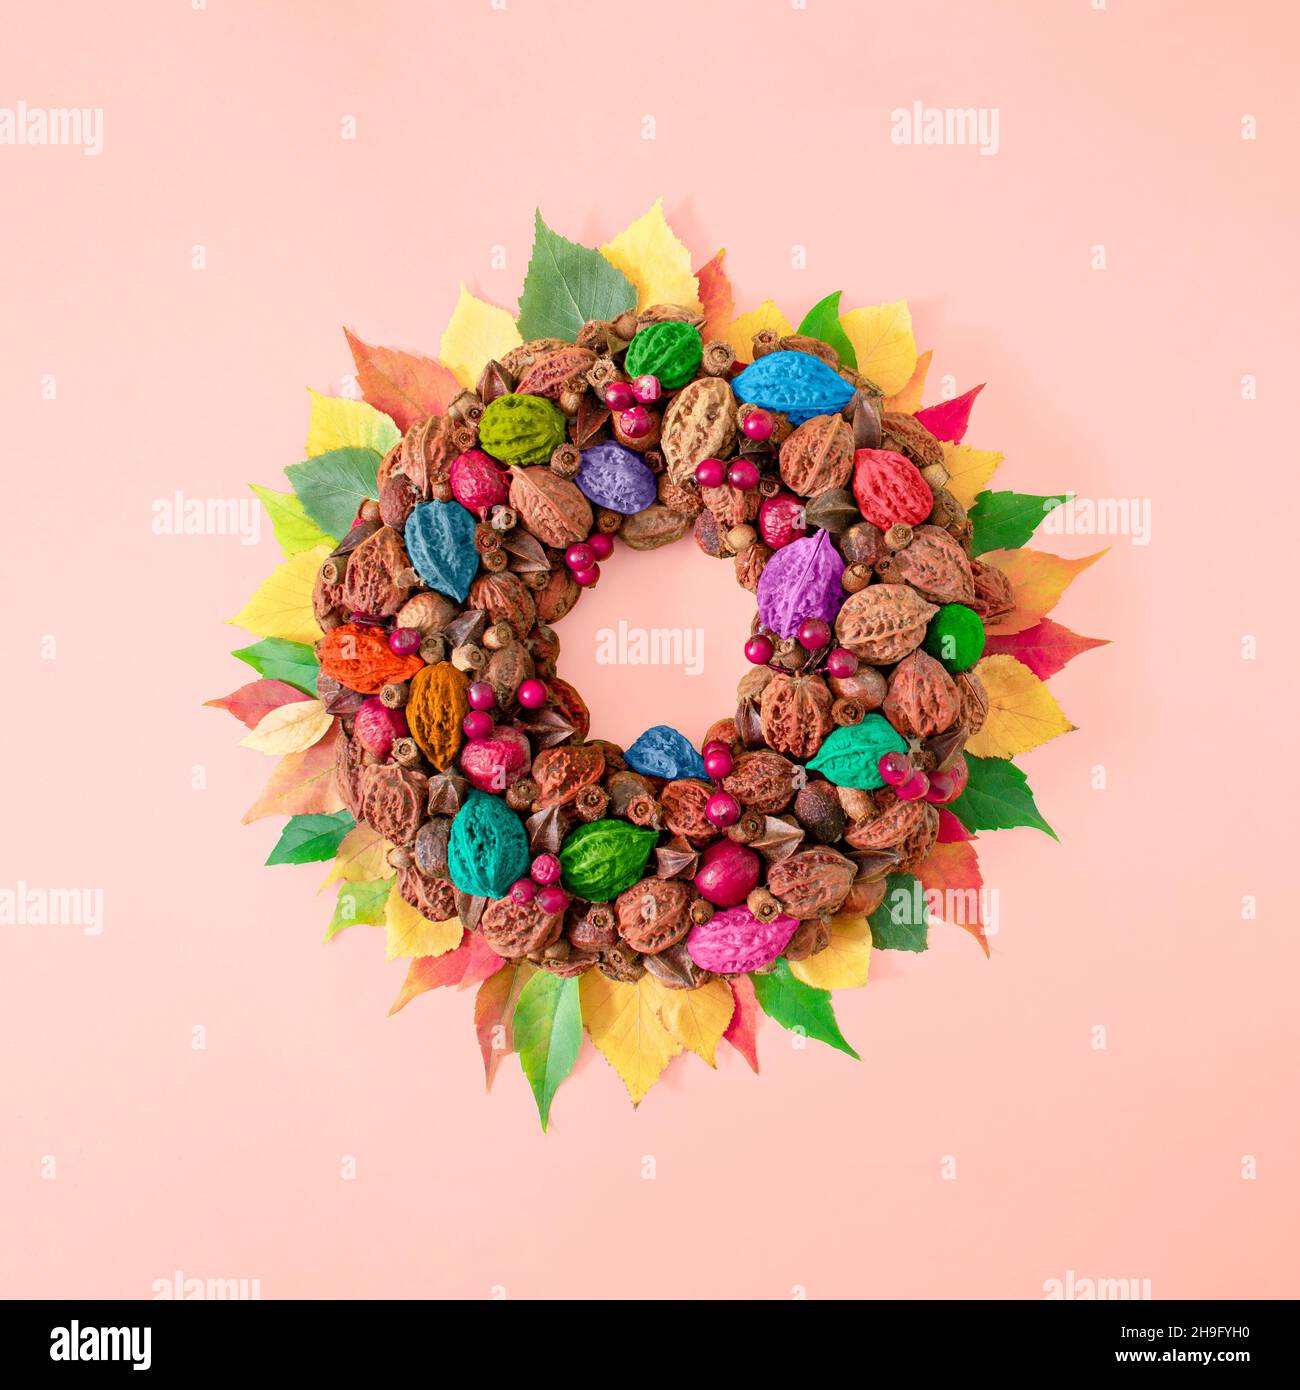 Decorazione a cerchio creativa autunno fatto di frutti di bosco di pietra e foglie colorate. Il concetto piatto di castagno e noci si basa su sfondo rosa pastello. Foto Stock